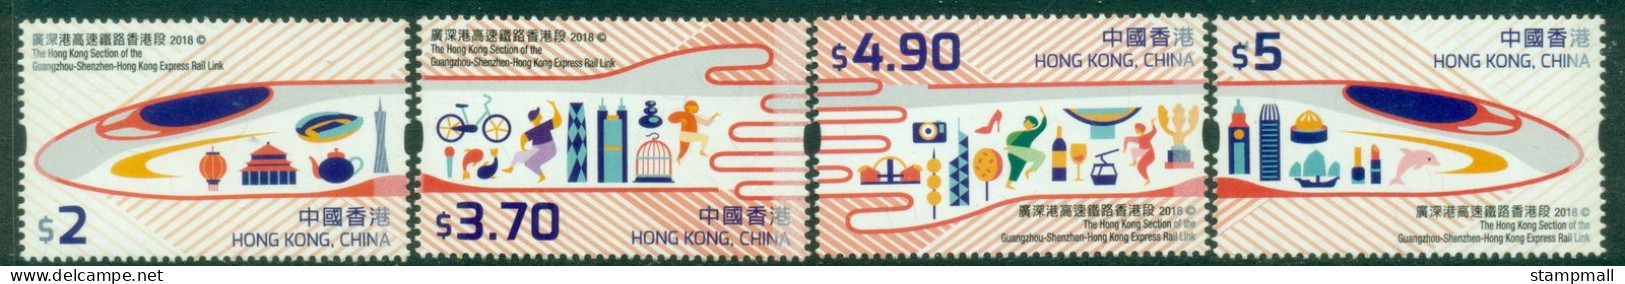 Hong Hong 2018 Express Rail Link MUH - Unused Stamps